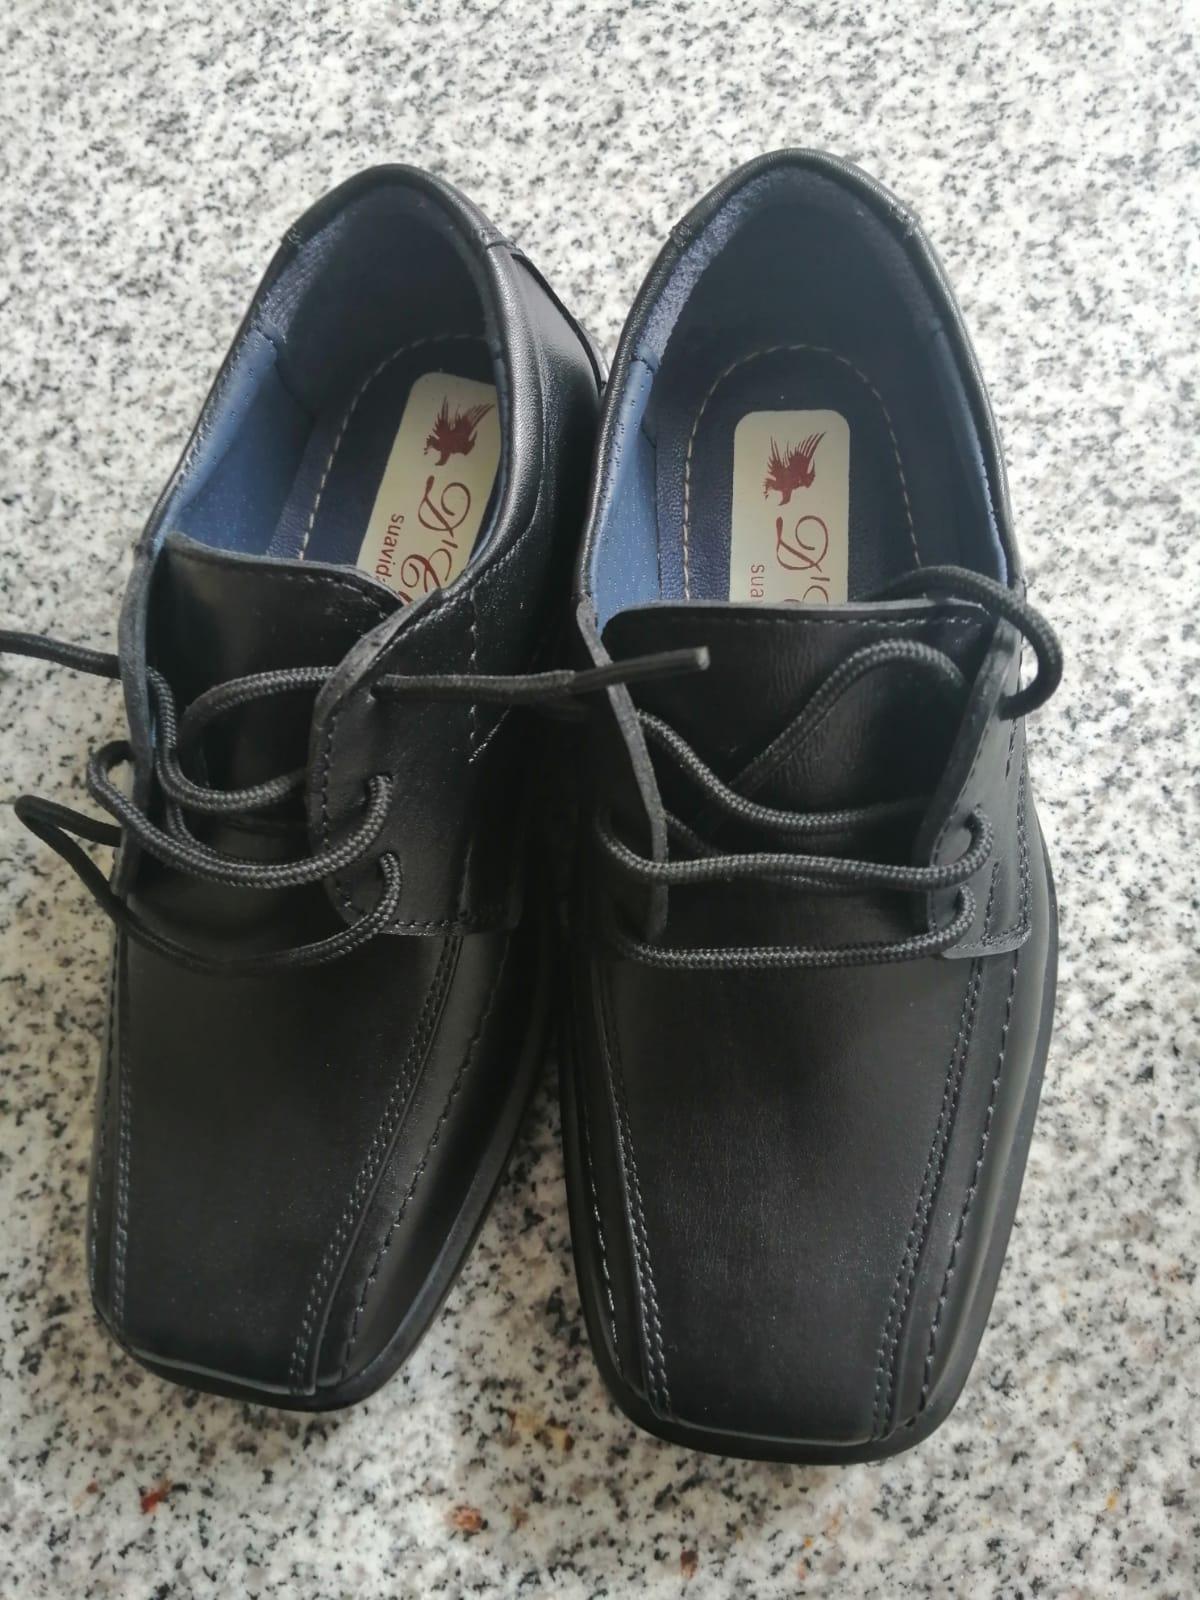 Zapatos Nuevos de Niño – 2- 4 años – S/ 55 – Arequipa